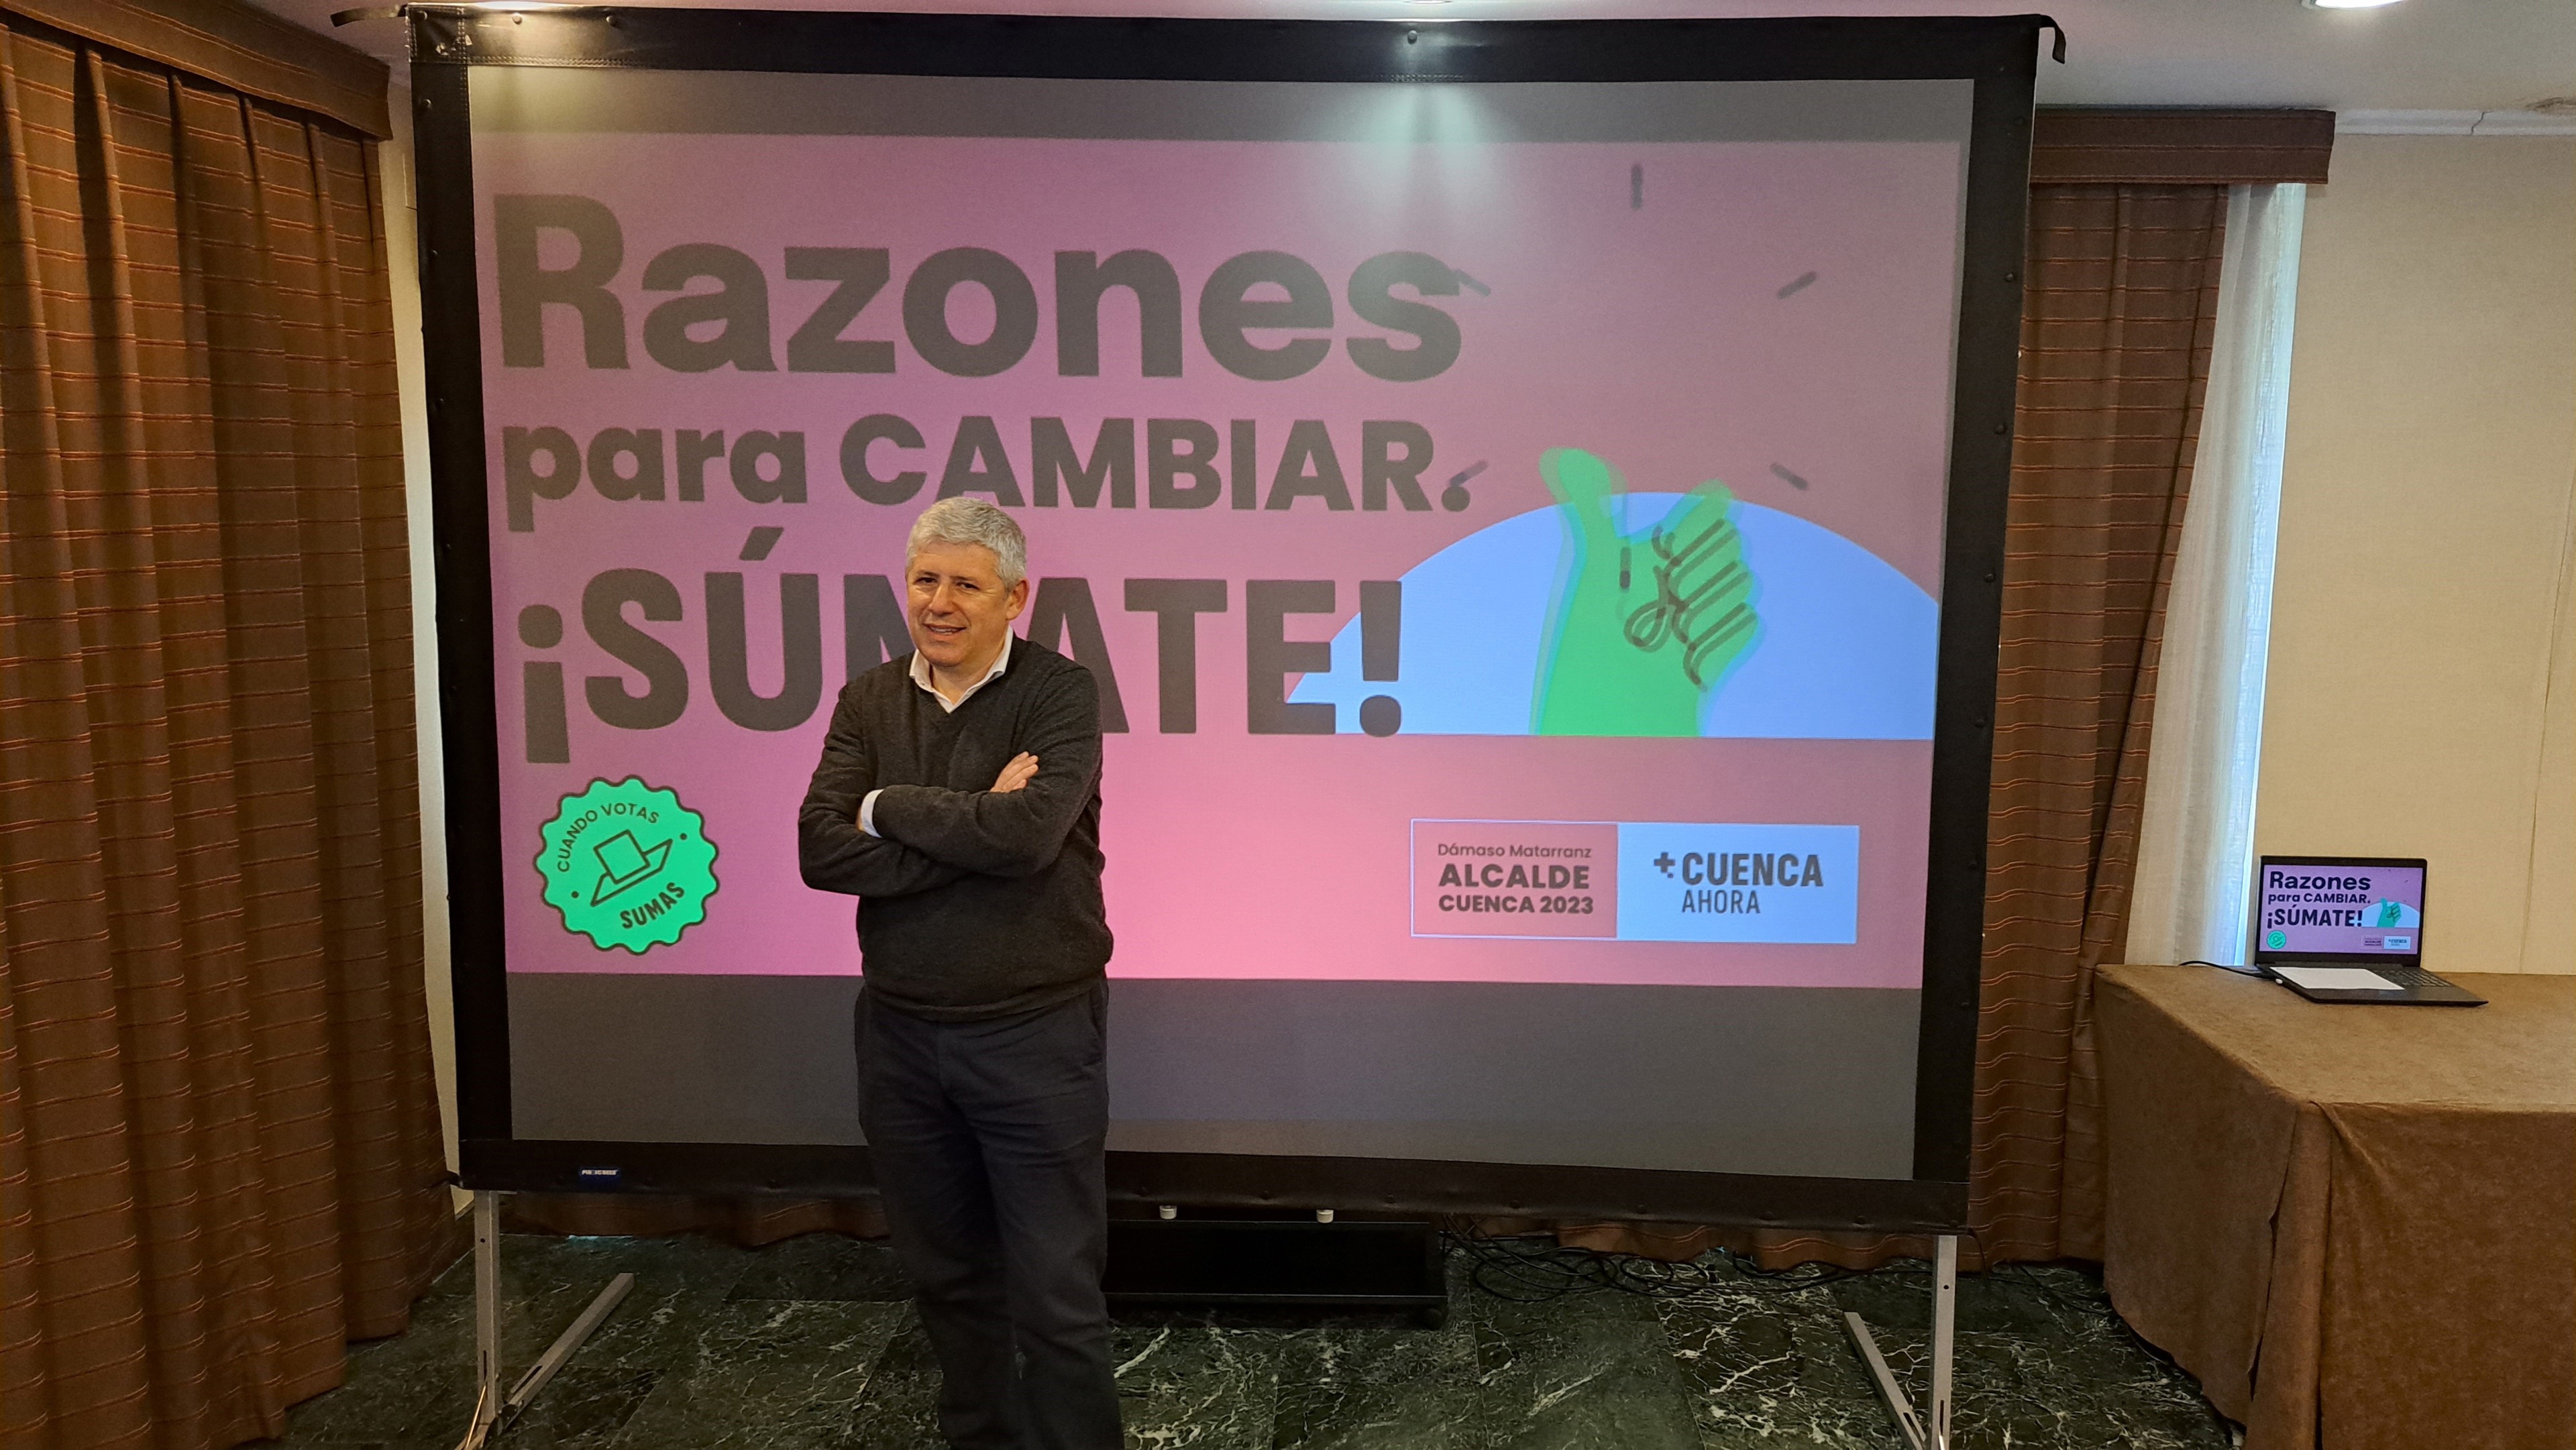 Dámaso Matarranz encabezará la candidatura a la Alcaldía de Cuenca por la coalición +Cuenca Ahora.